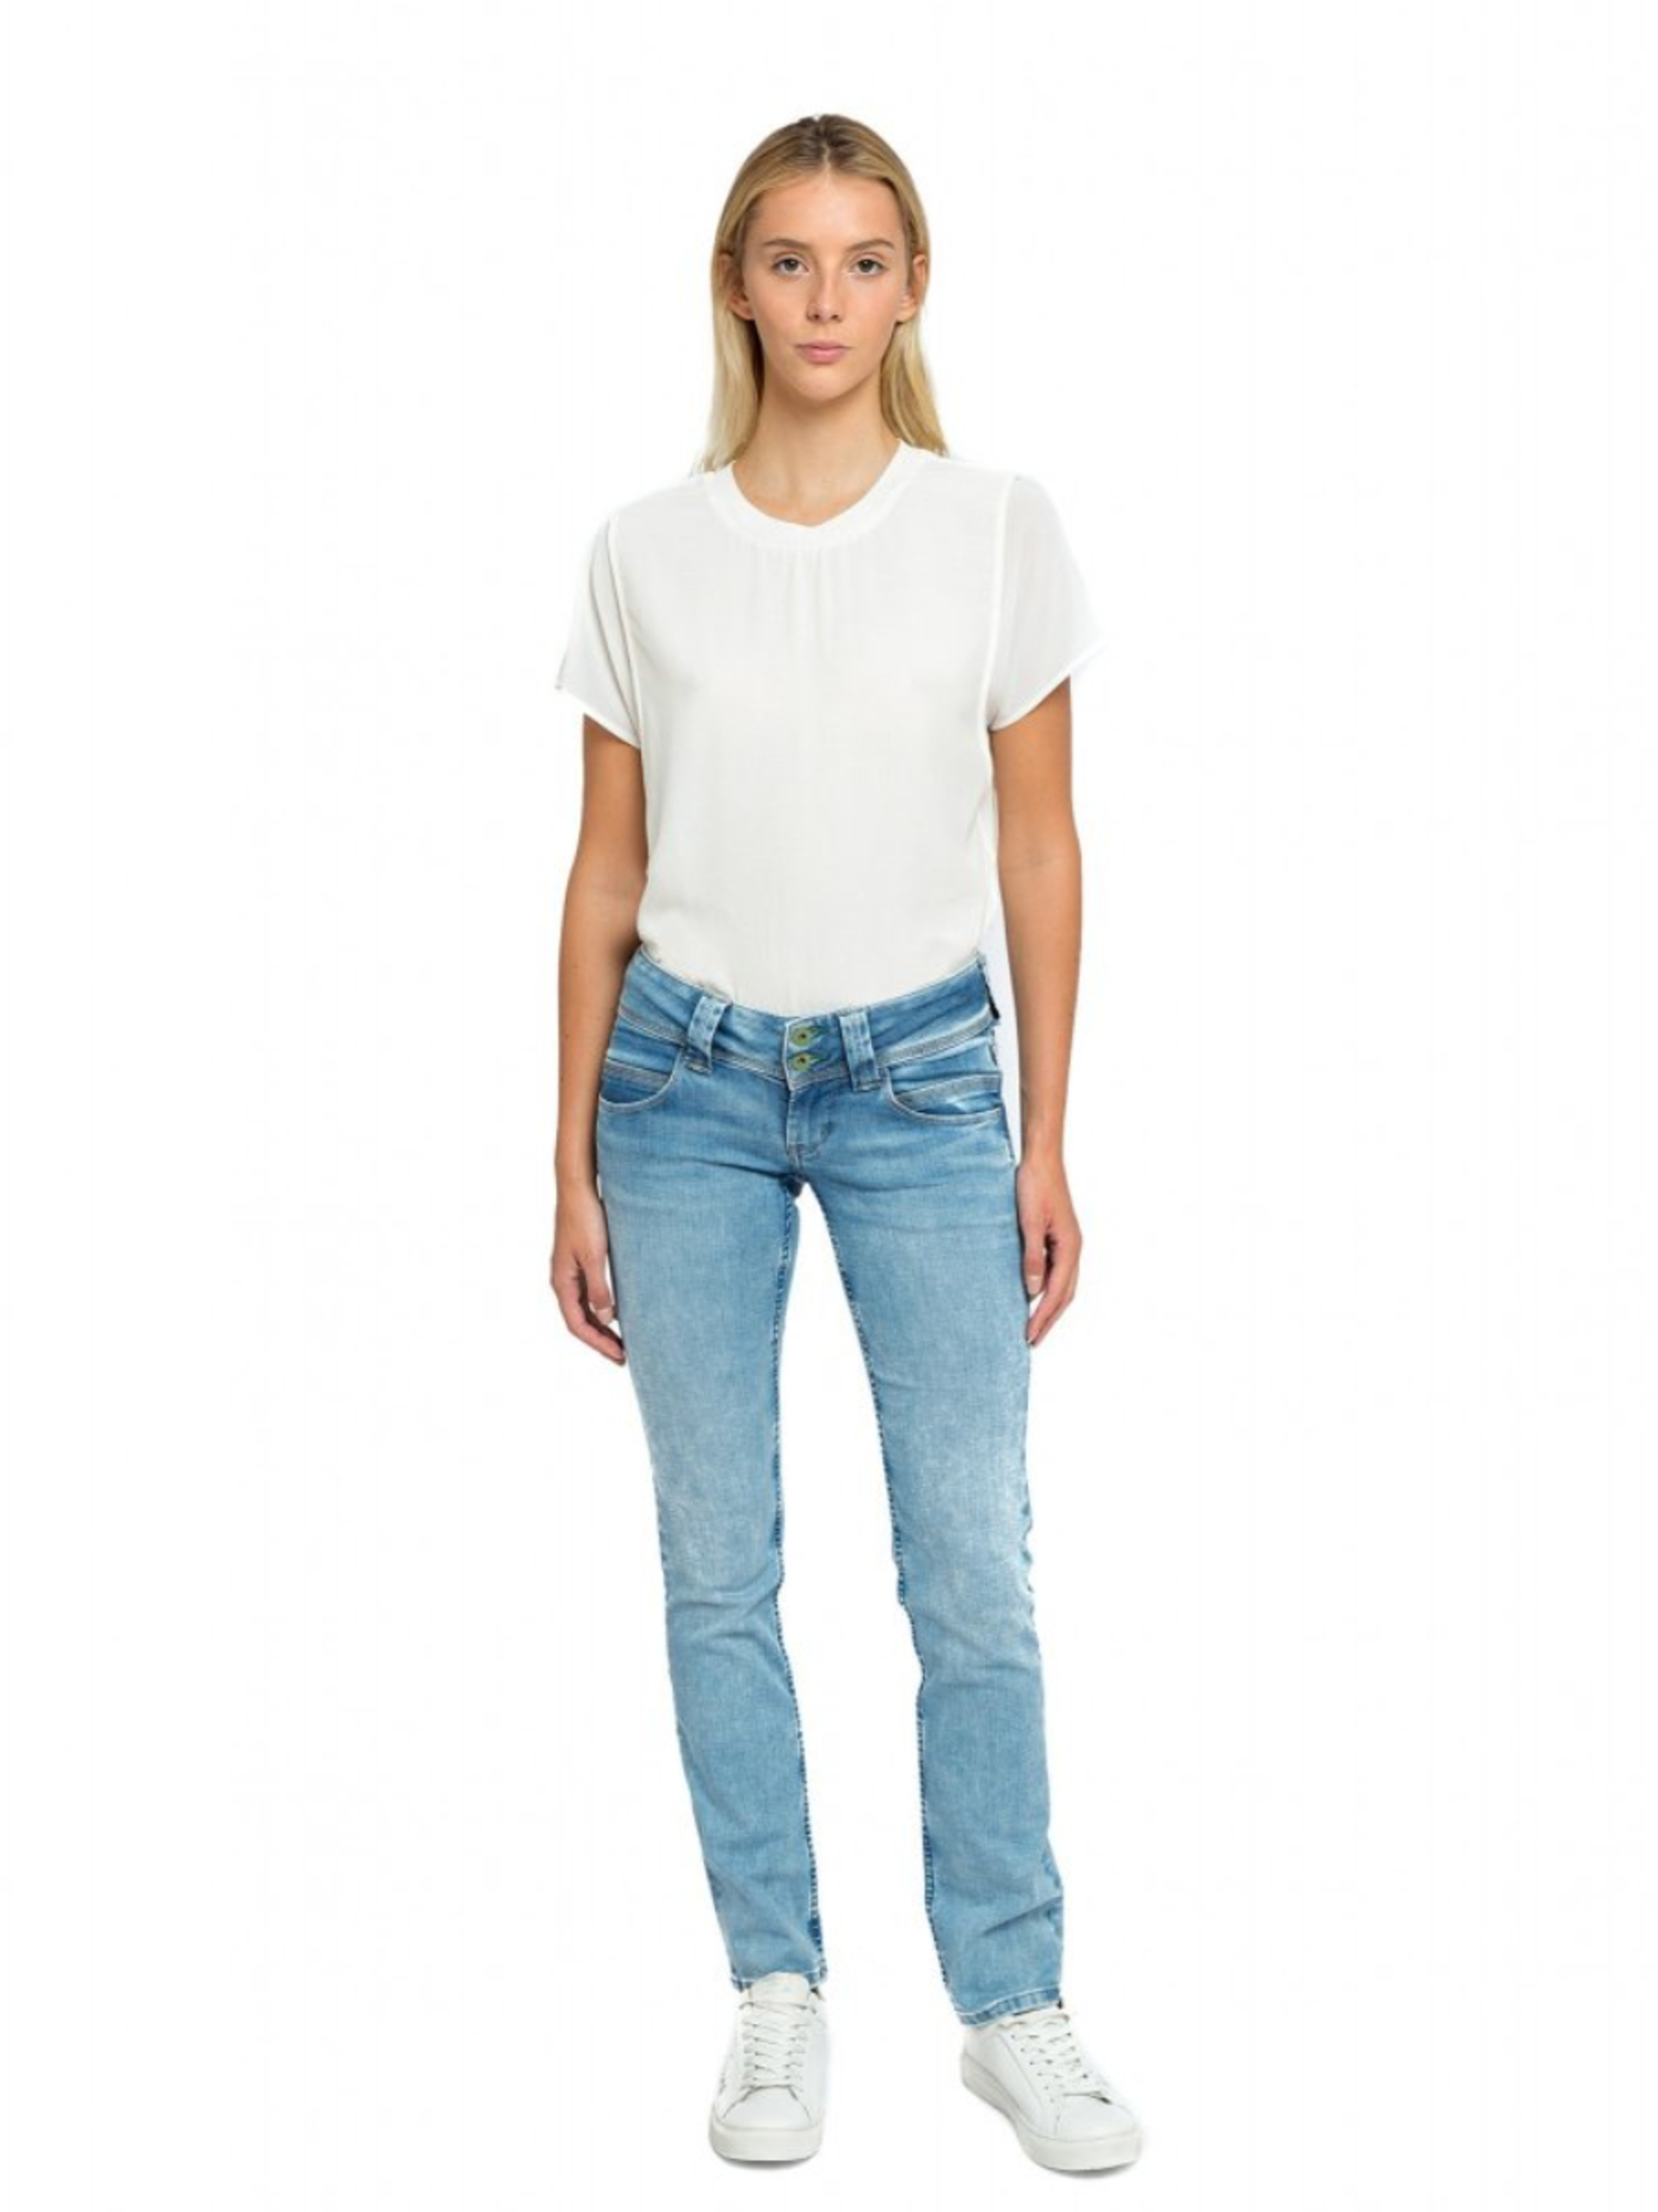 Pepe Jeans dámské modré džíny - 25/32 (000)